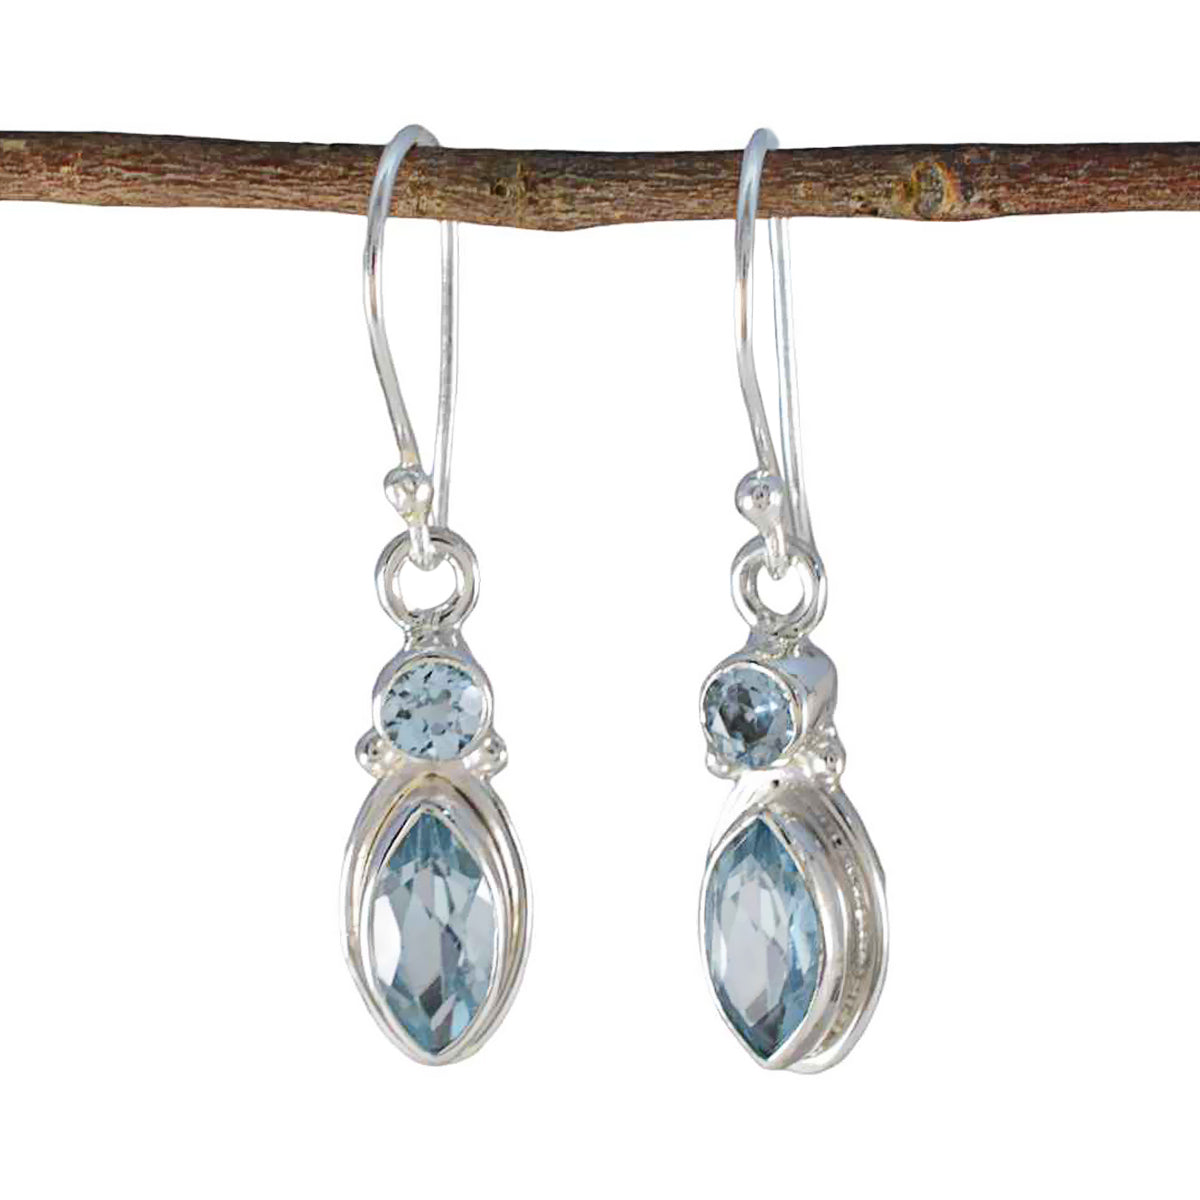 Riyo Comely Sterling Silver Earring For Sister Blue Topaz Earring Bezel Setting Blue Earring Dangle Earring